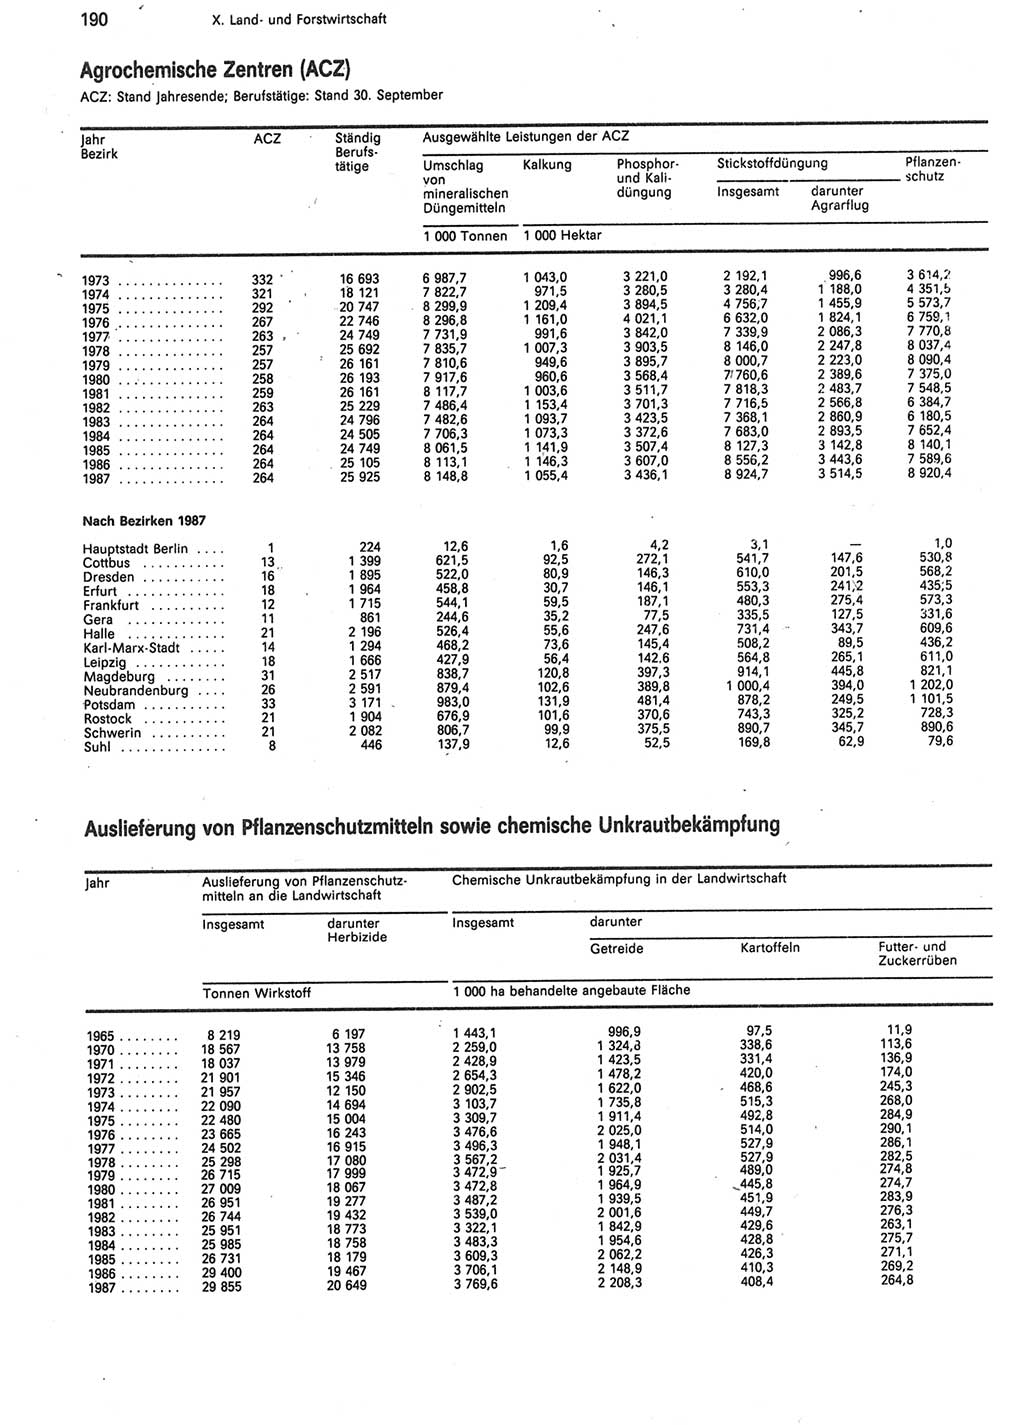 Statistisches Jahrbuch der Deutschen Demokratischen Republik (DDR) 1988, Seite 190 (Stat. Jb. DDR 1988, S. 190)